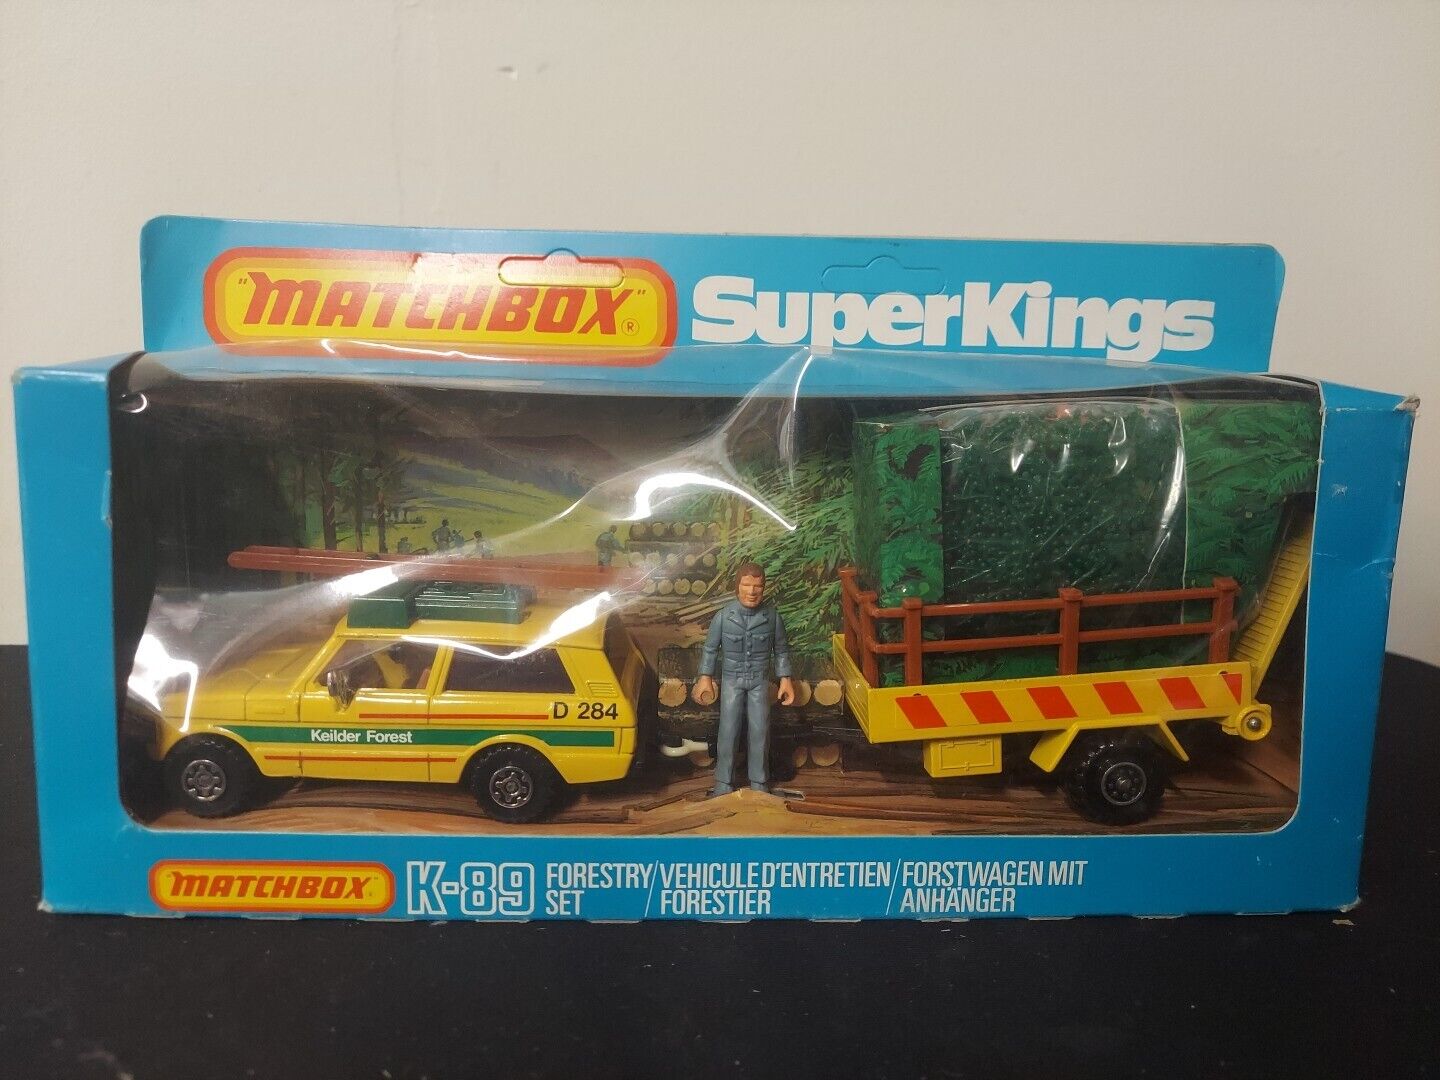 Vintage Matchbox SuperKings K-89 Forestry Set 